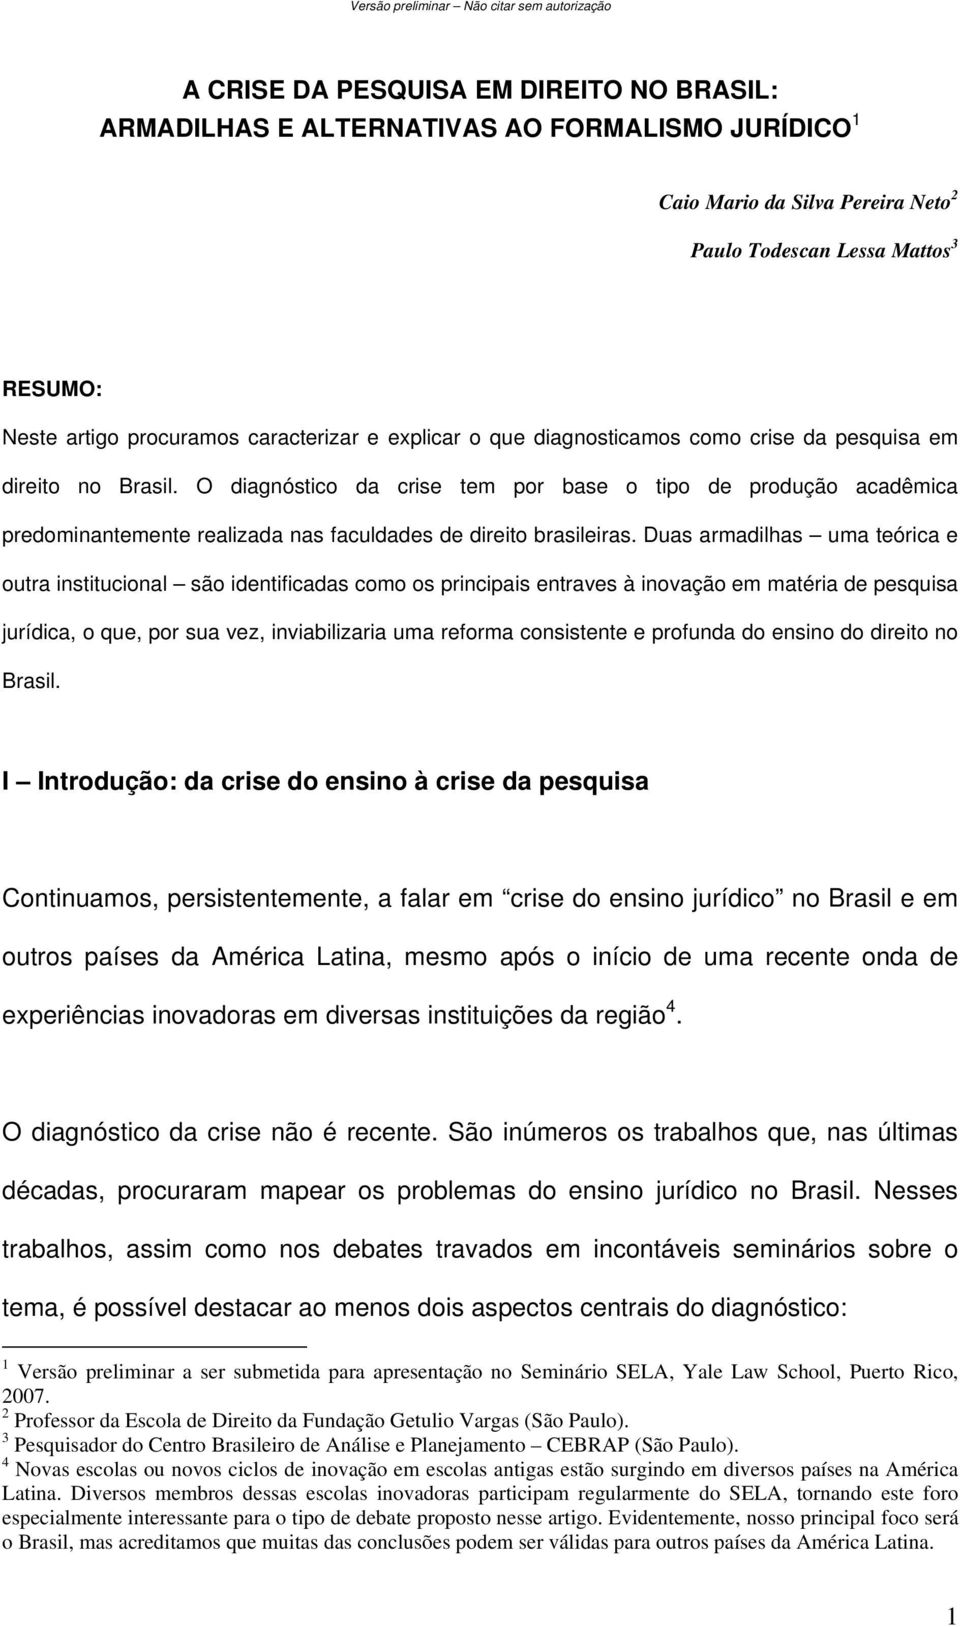 O diagnóstico da crise tem por base o tipo de produção acadêmica predominantemente realizada nas faculdades de direito brasileiras.